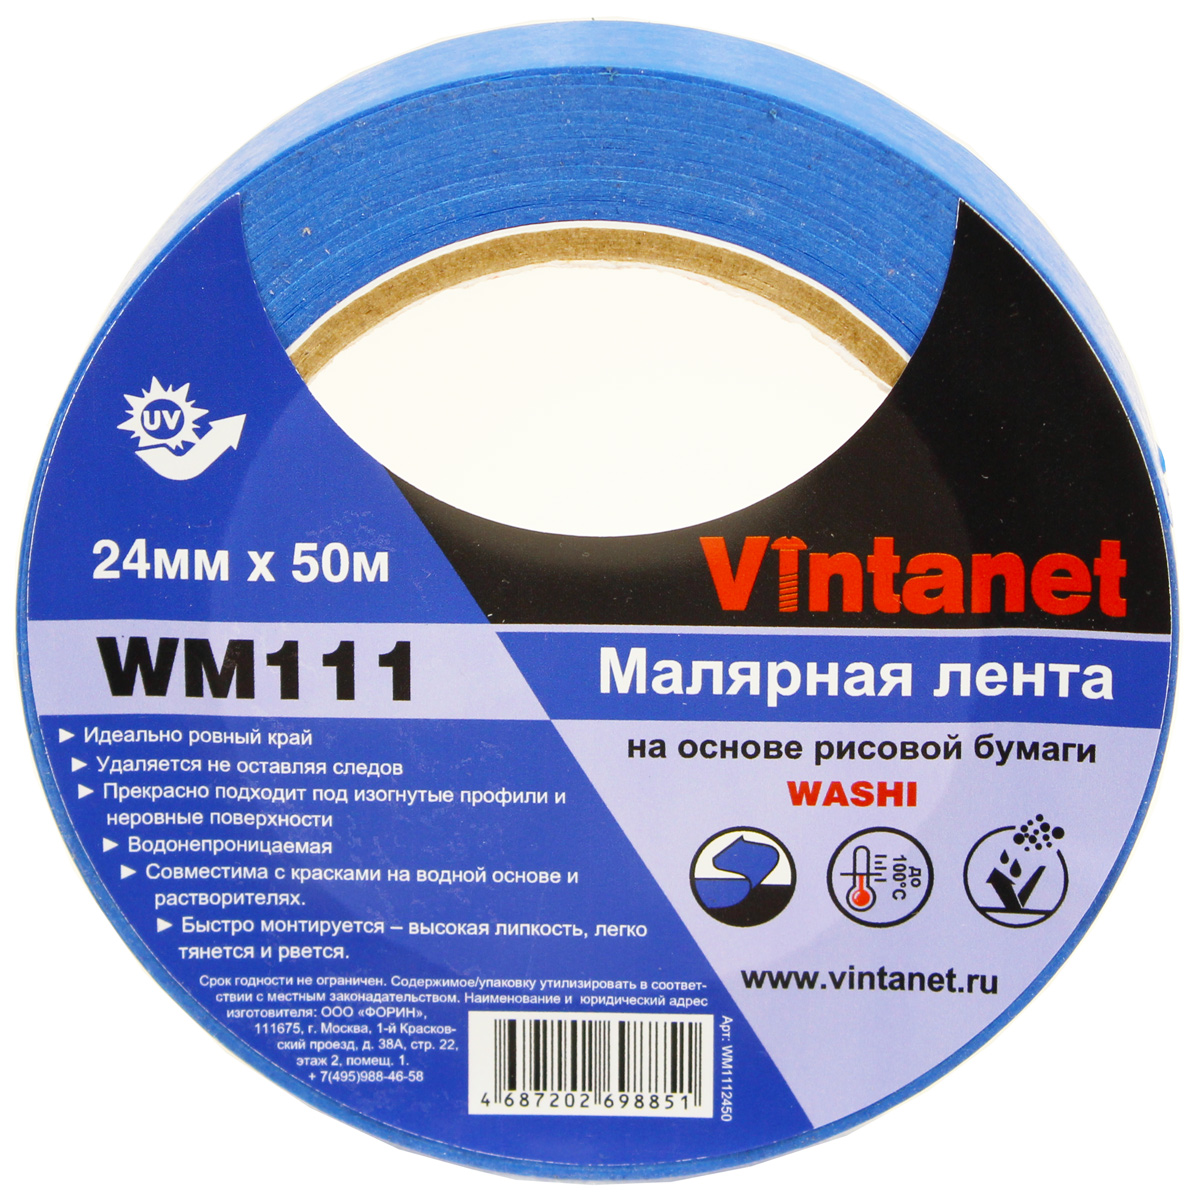 Лента малярная на основе рисовой бумаги Washi, Vintanet WM111, 24мм х 50м, WM1112450 бумага ная односторонняя